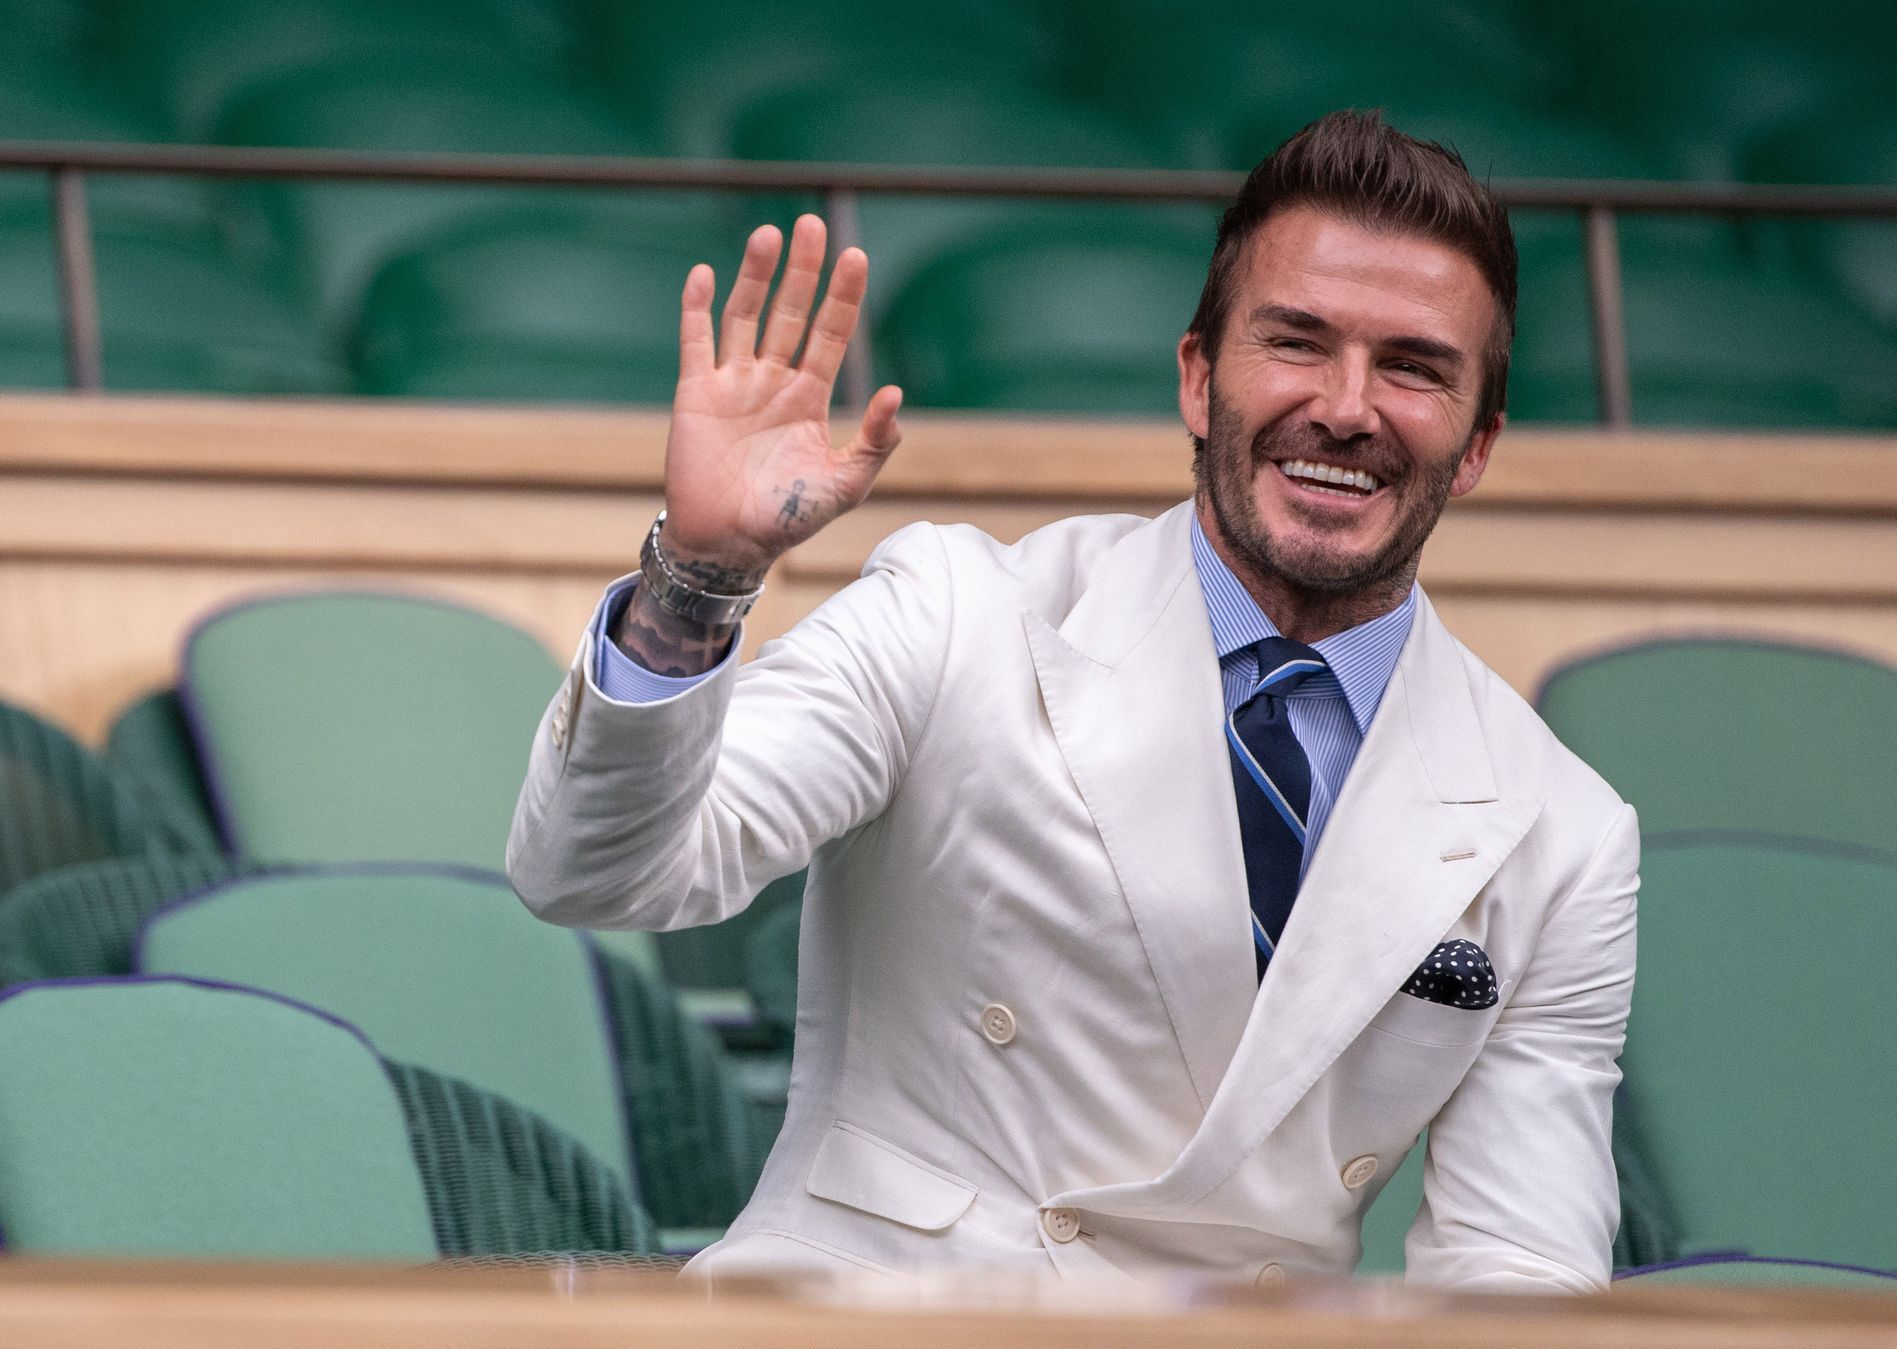 David Beckham na Wimbledonu 2021